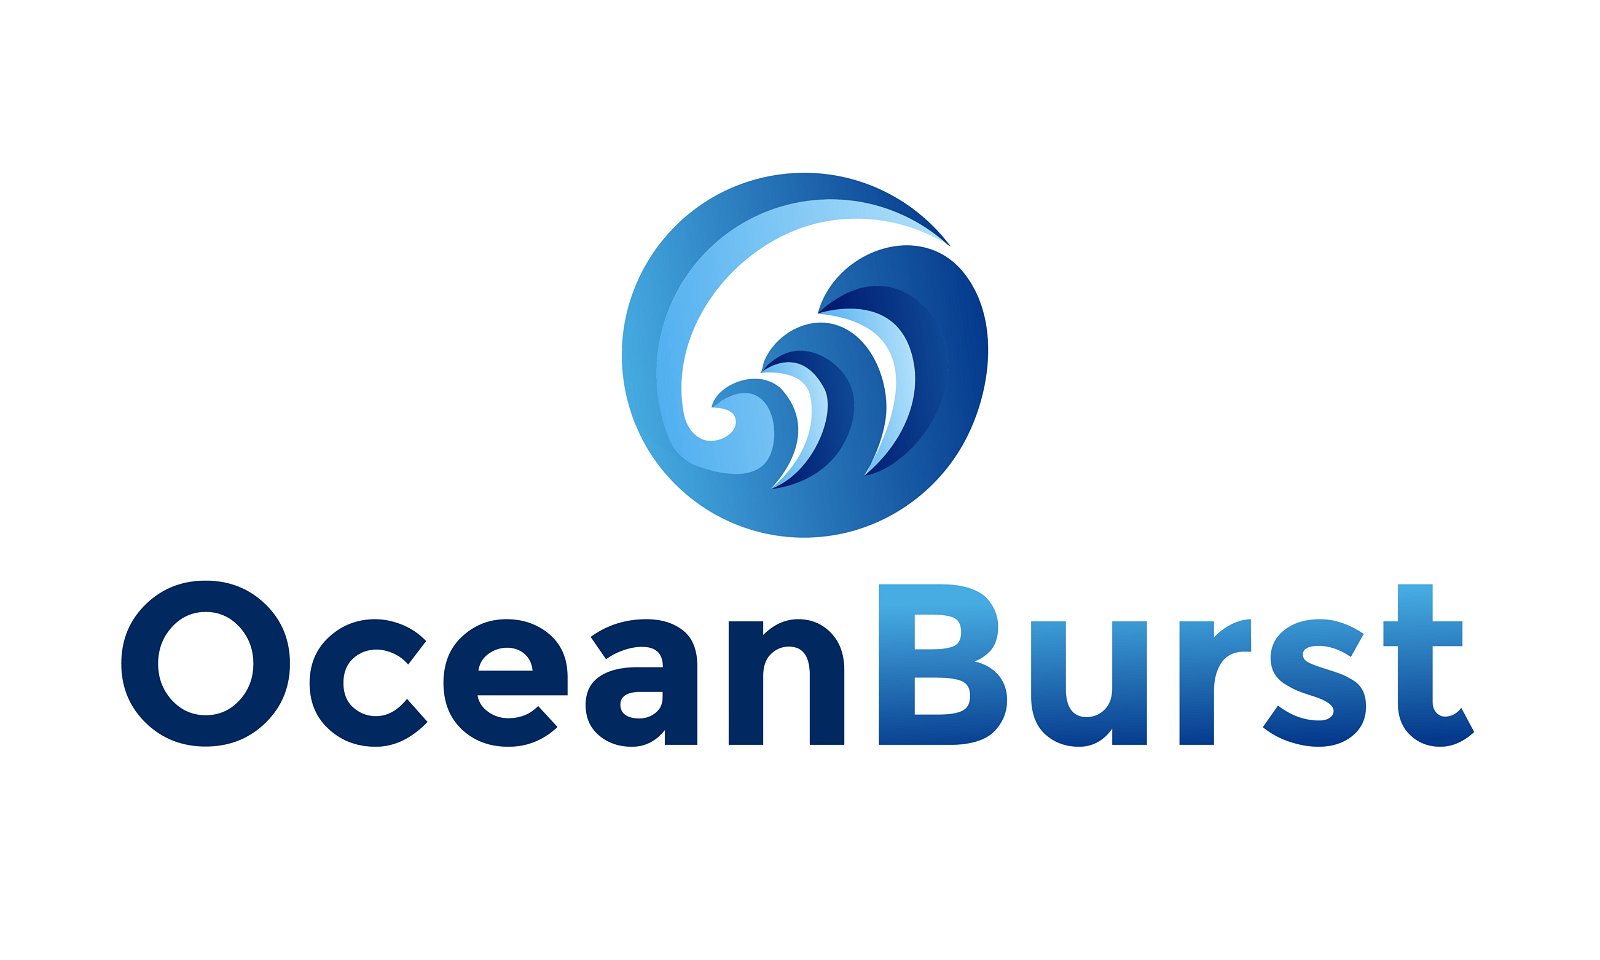 OceanBurst.com - Creative brandable domain for sale